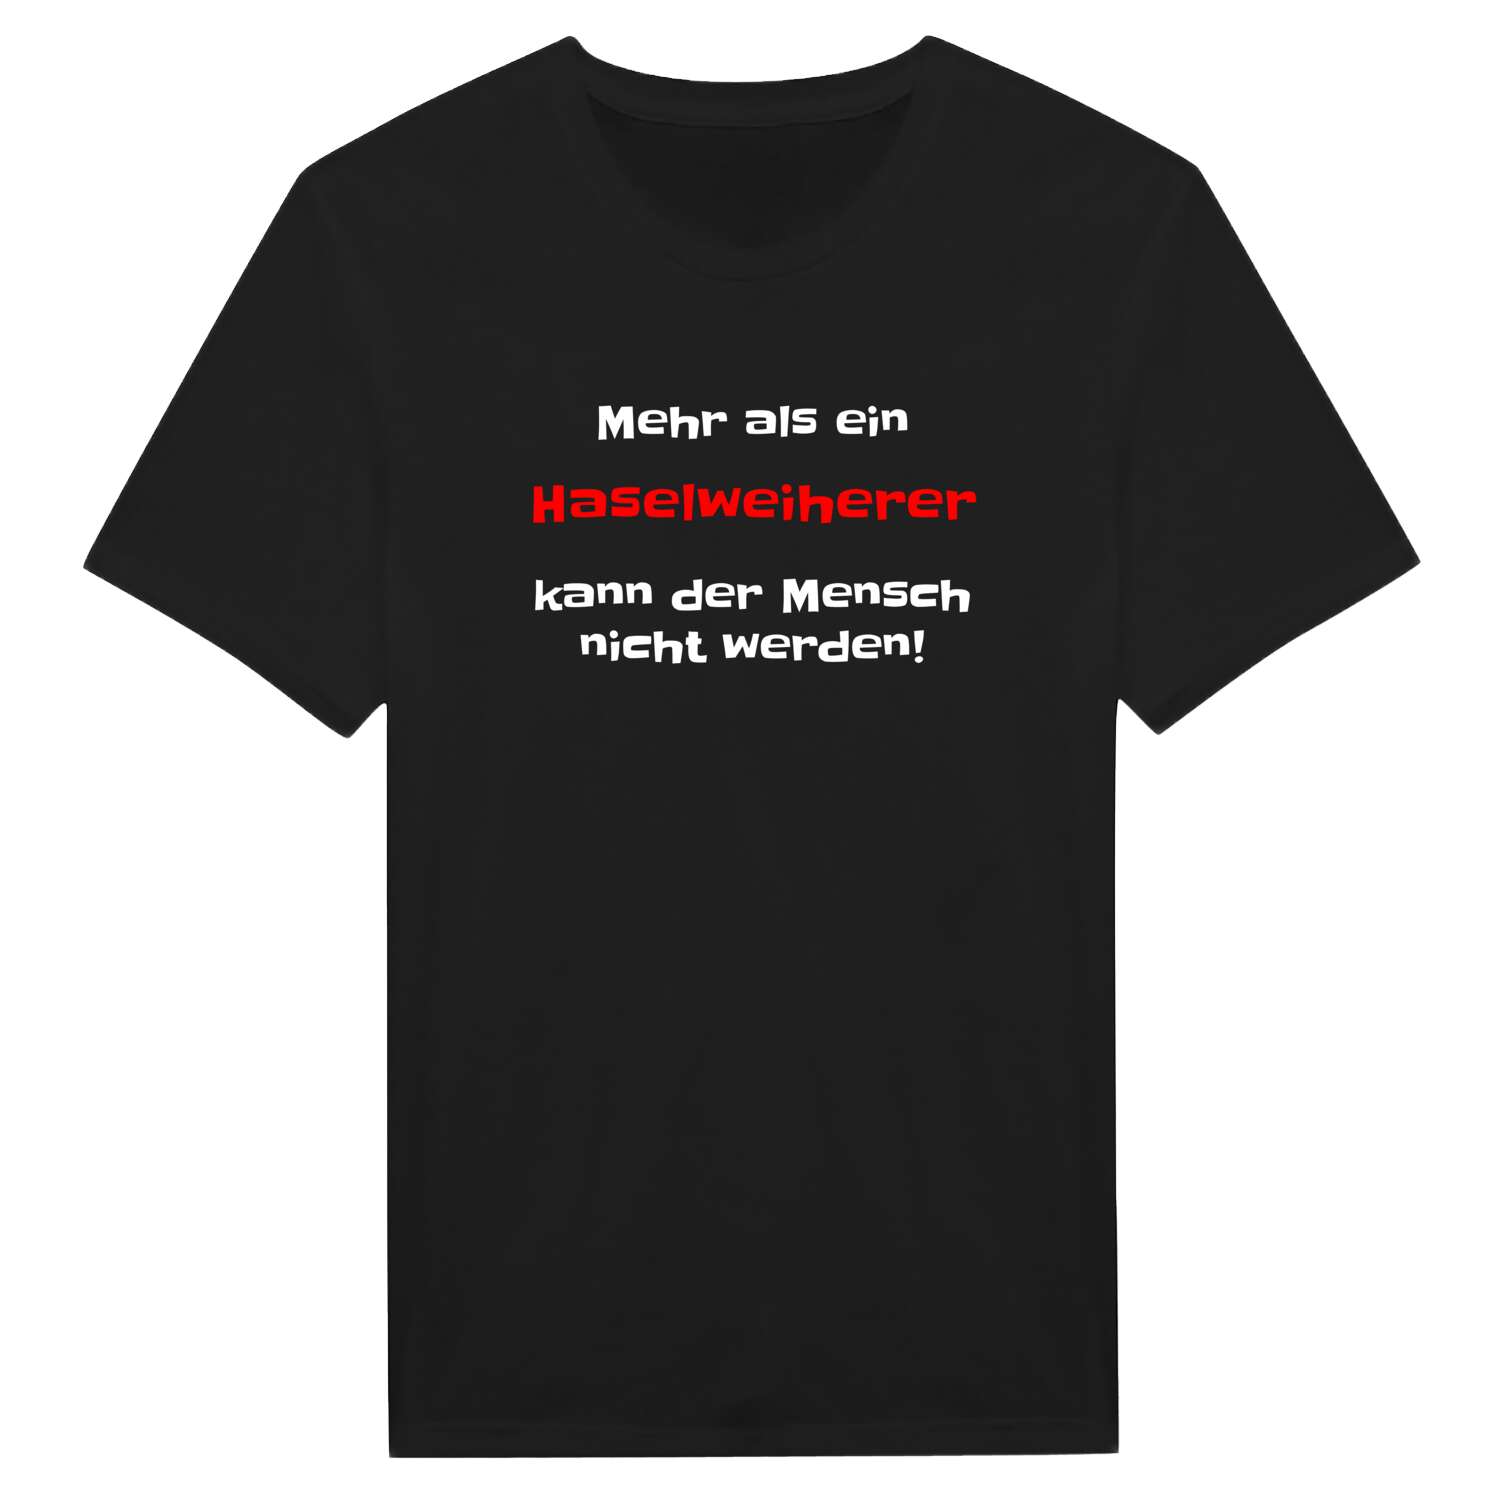 Haselweiher T-Shirt »Mehr als ein«